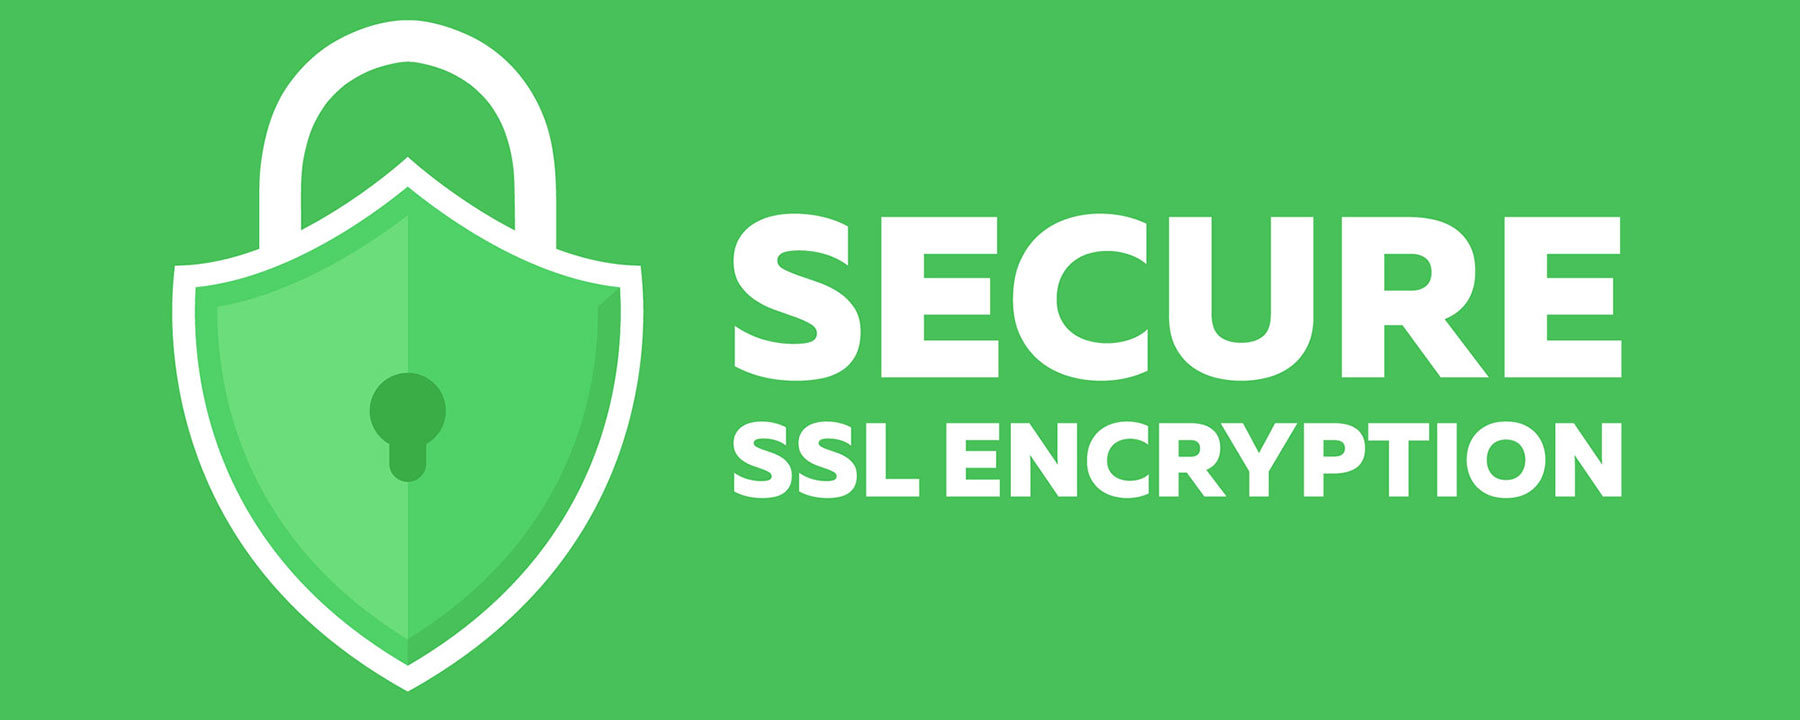 Как обновить SSL-сертификат на сайте?